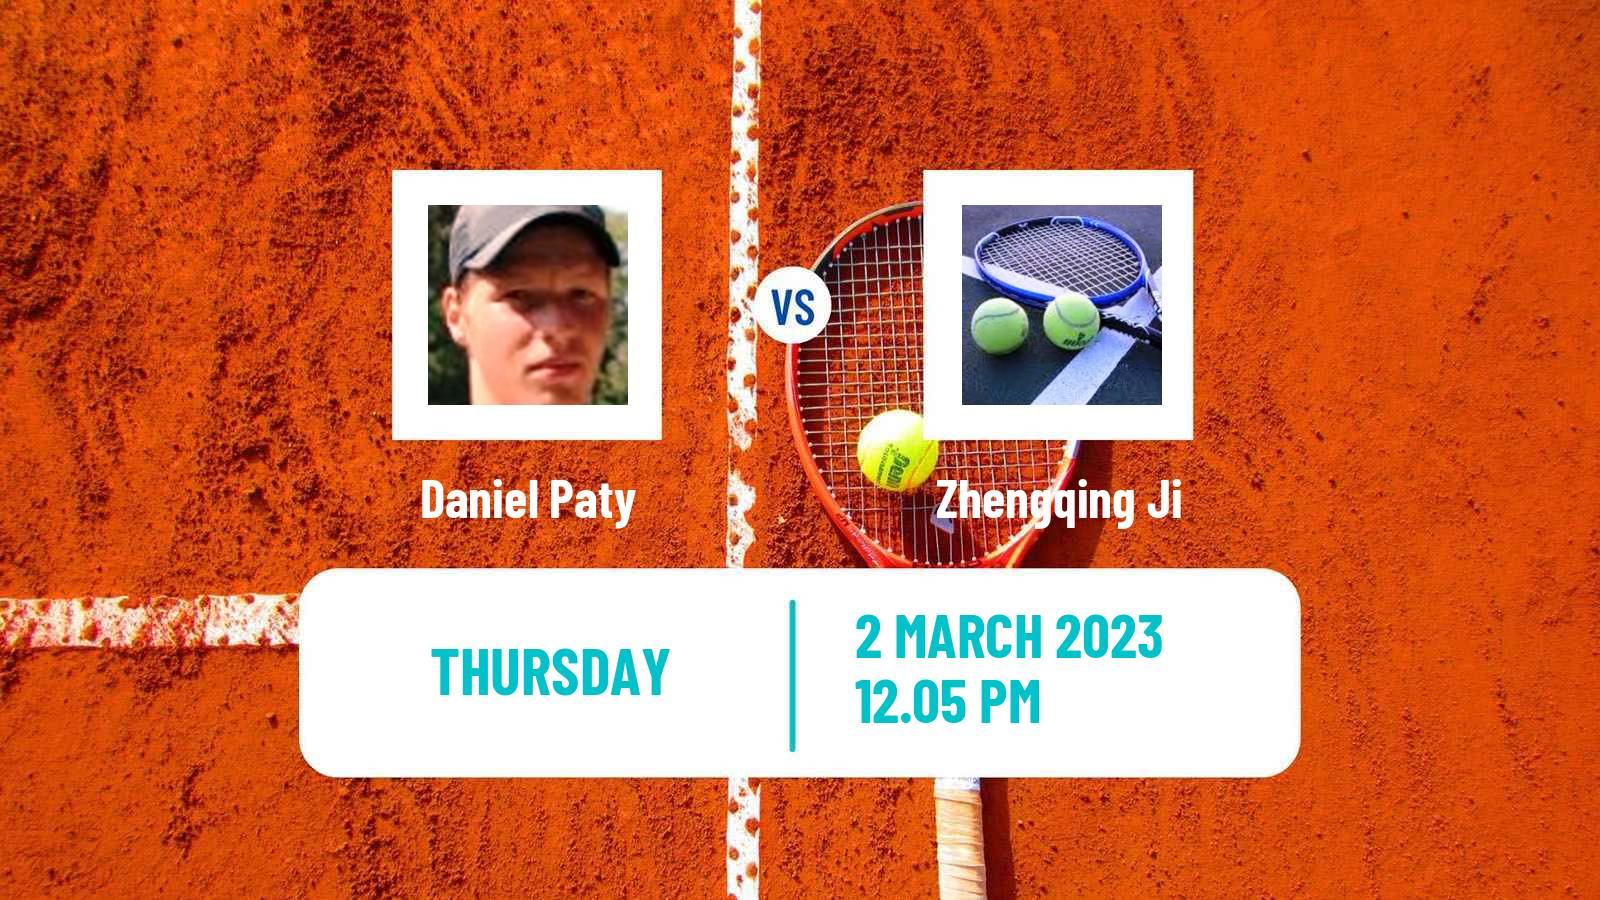 Tennis ITF Tournaments Daniel Paty - Zhengqing Ji